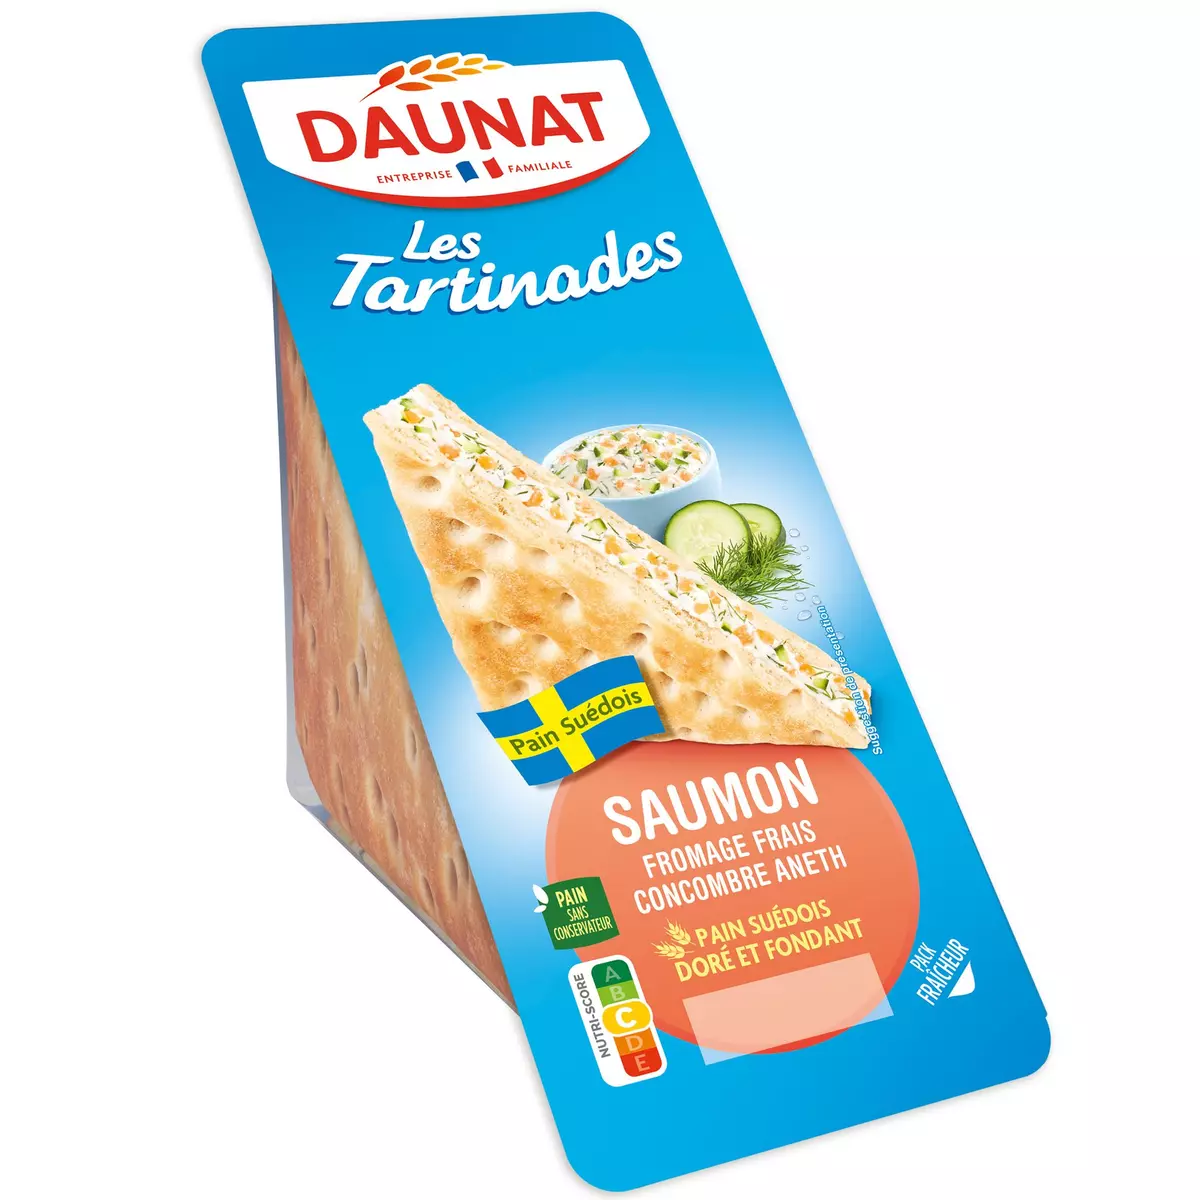 DAUNAT Les tartinades sandwich suédois au saumon fromage frais concombre et aneth 135g